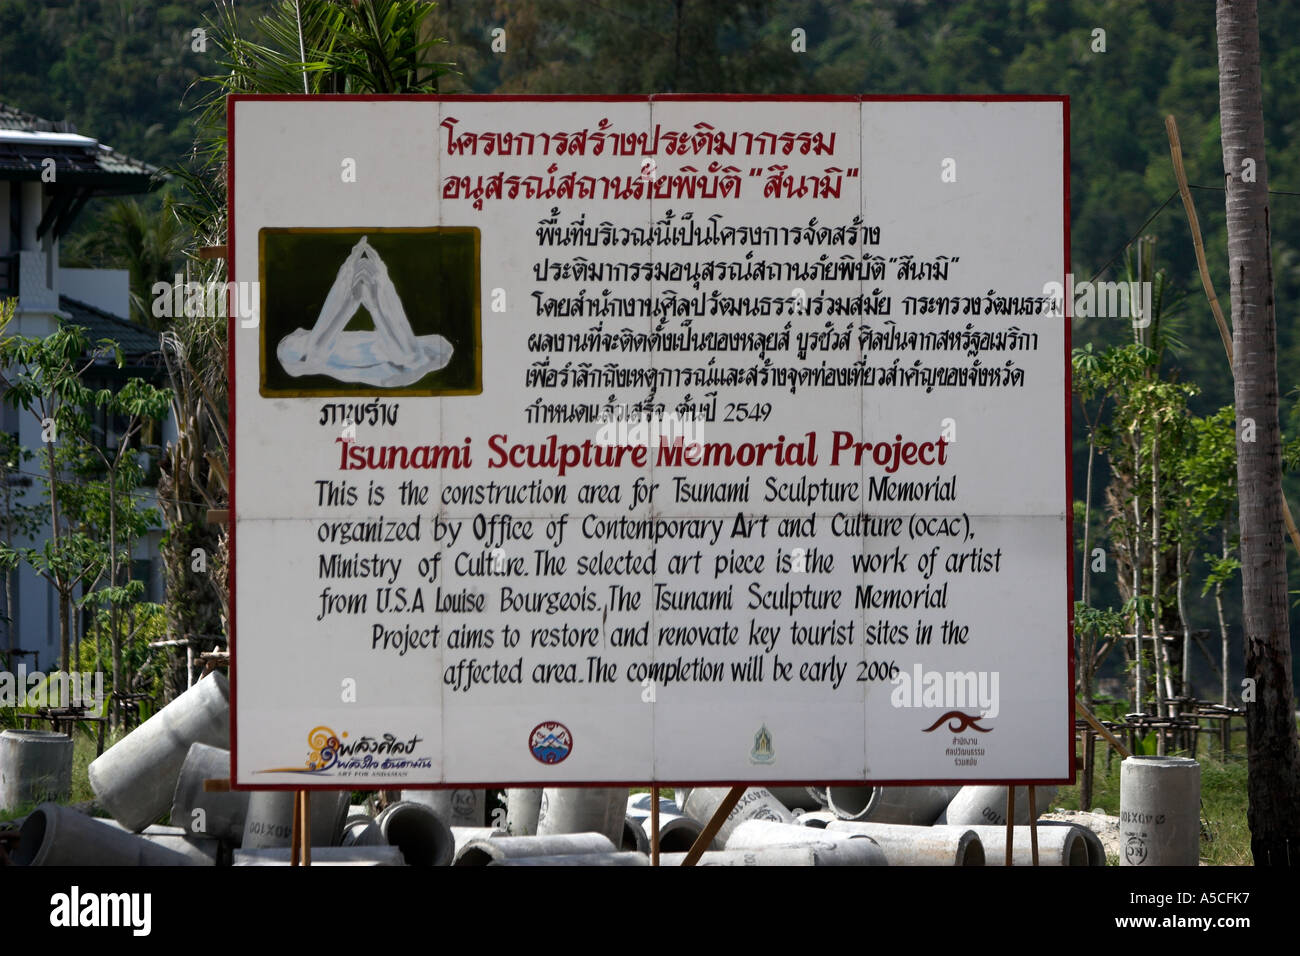 Progetto Tsunami Memorial Sculpture segno indicante il memorial e promettendo di lavori di ristrutturazione e restauro di Phi Phi Island Thailandia Foto Stock